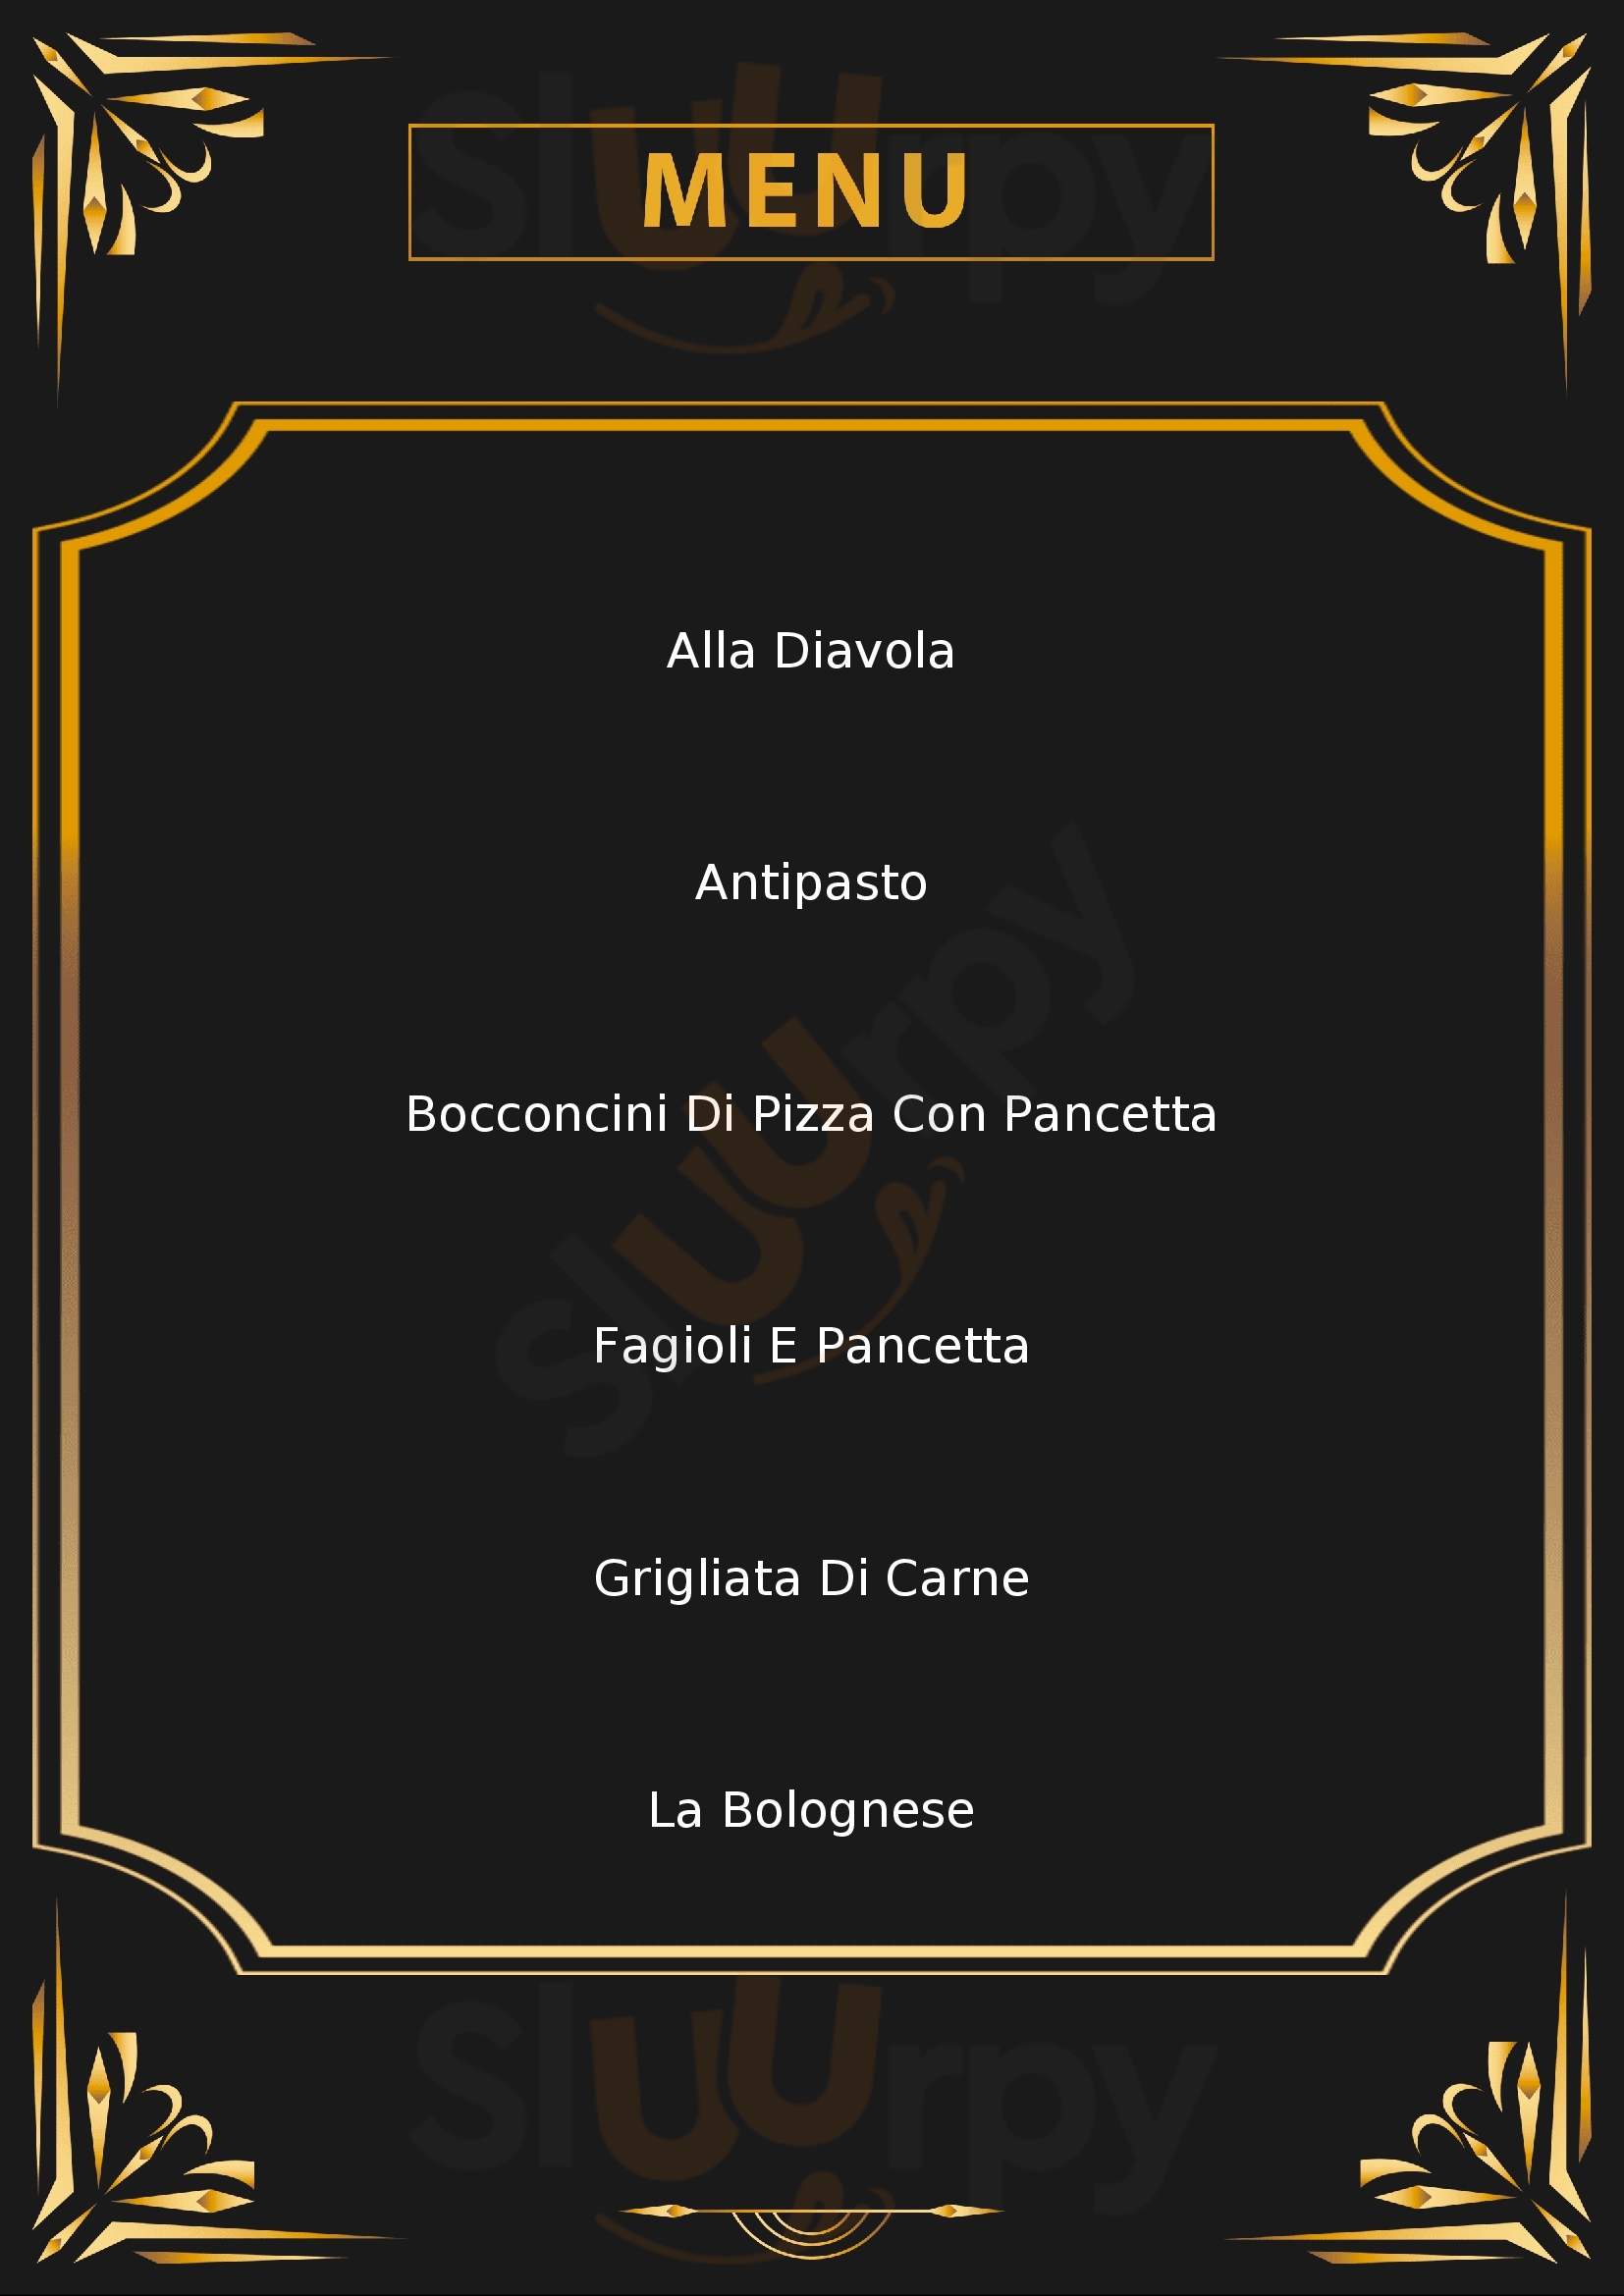 Il Vicoletto Pizzeria Trattoria Casola menù 1 pagina